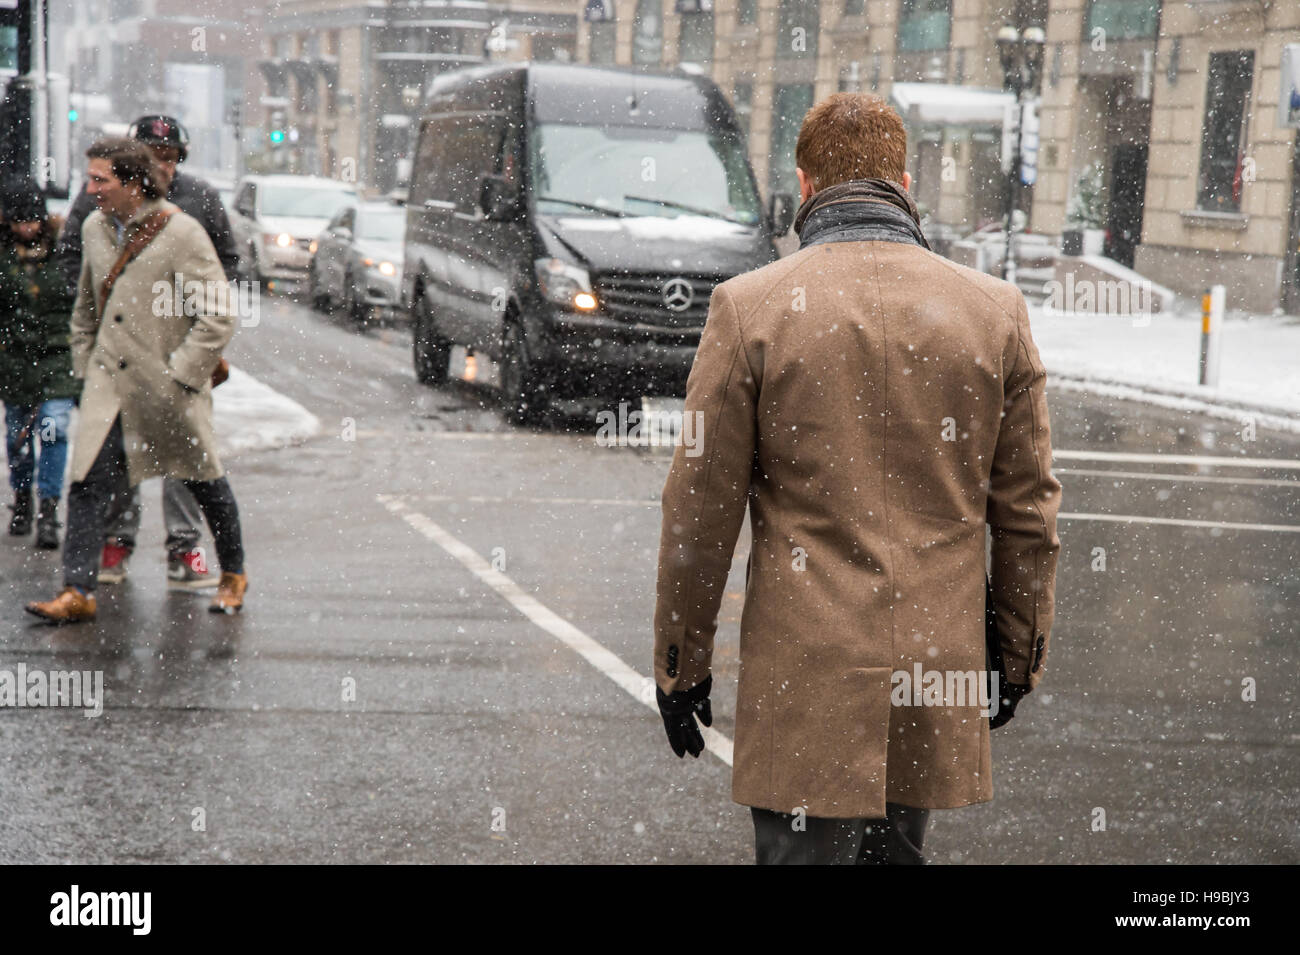 Montreal, Kanada. 21. November 2016. Erste Schnee der Saison trifft die Stadt. Fußgänger im Geschaeftsviertel. Bildnachweis: Marc Bruxelle/Alamy Live-Nachrichten Stockfoto